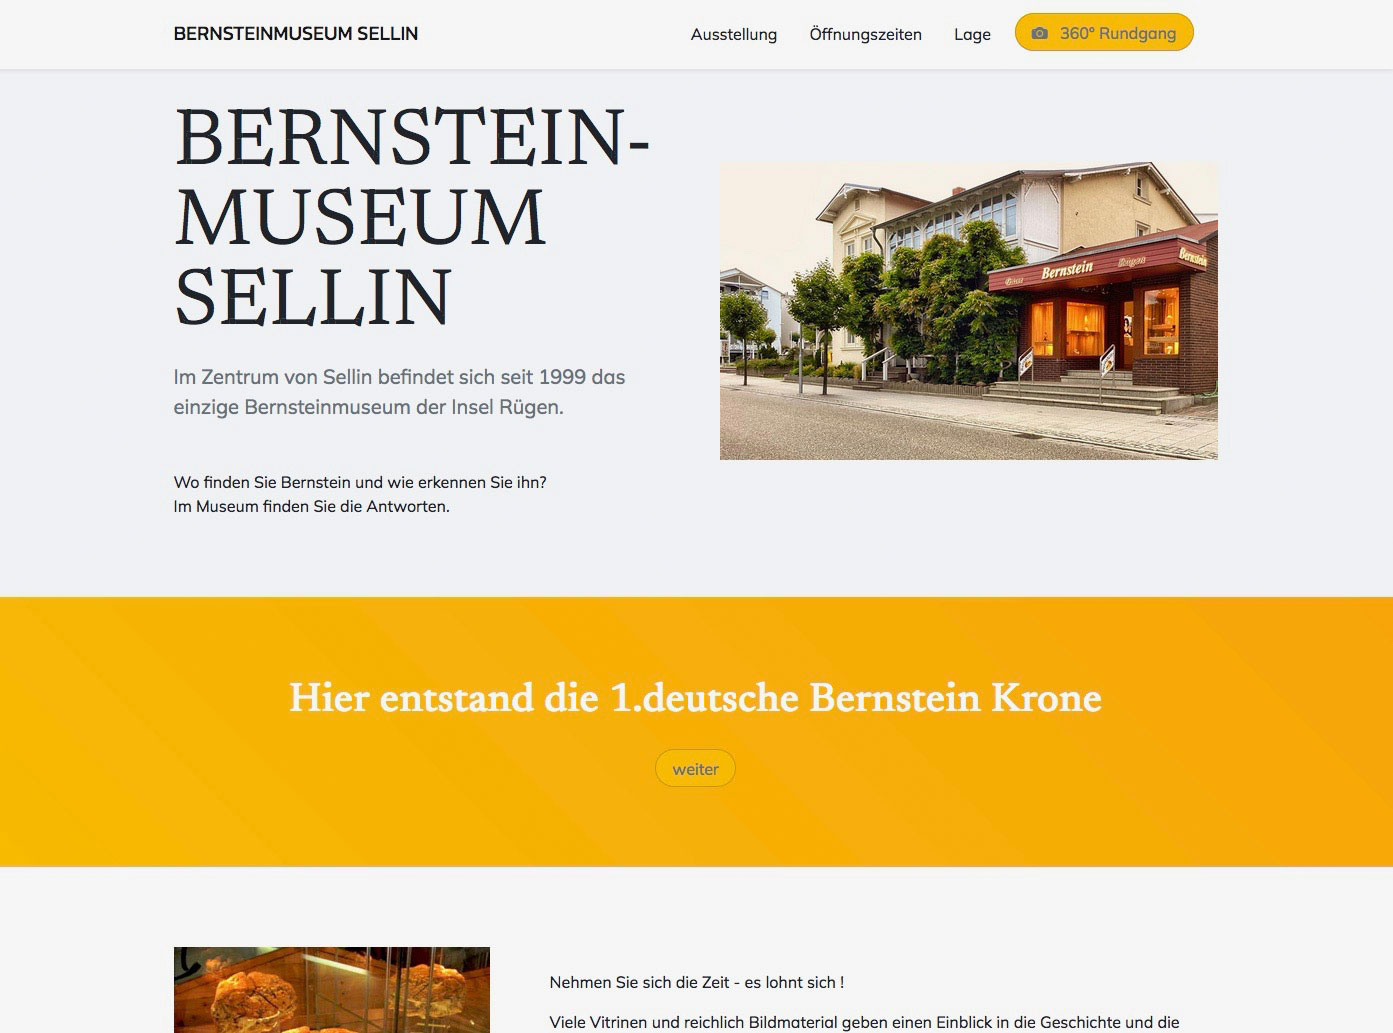 BERNSTEIN-MUSEUM SELLIN